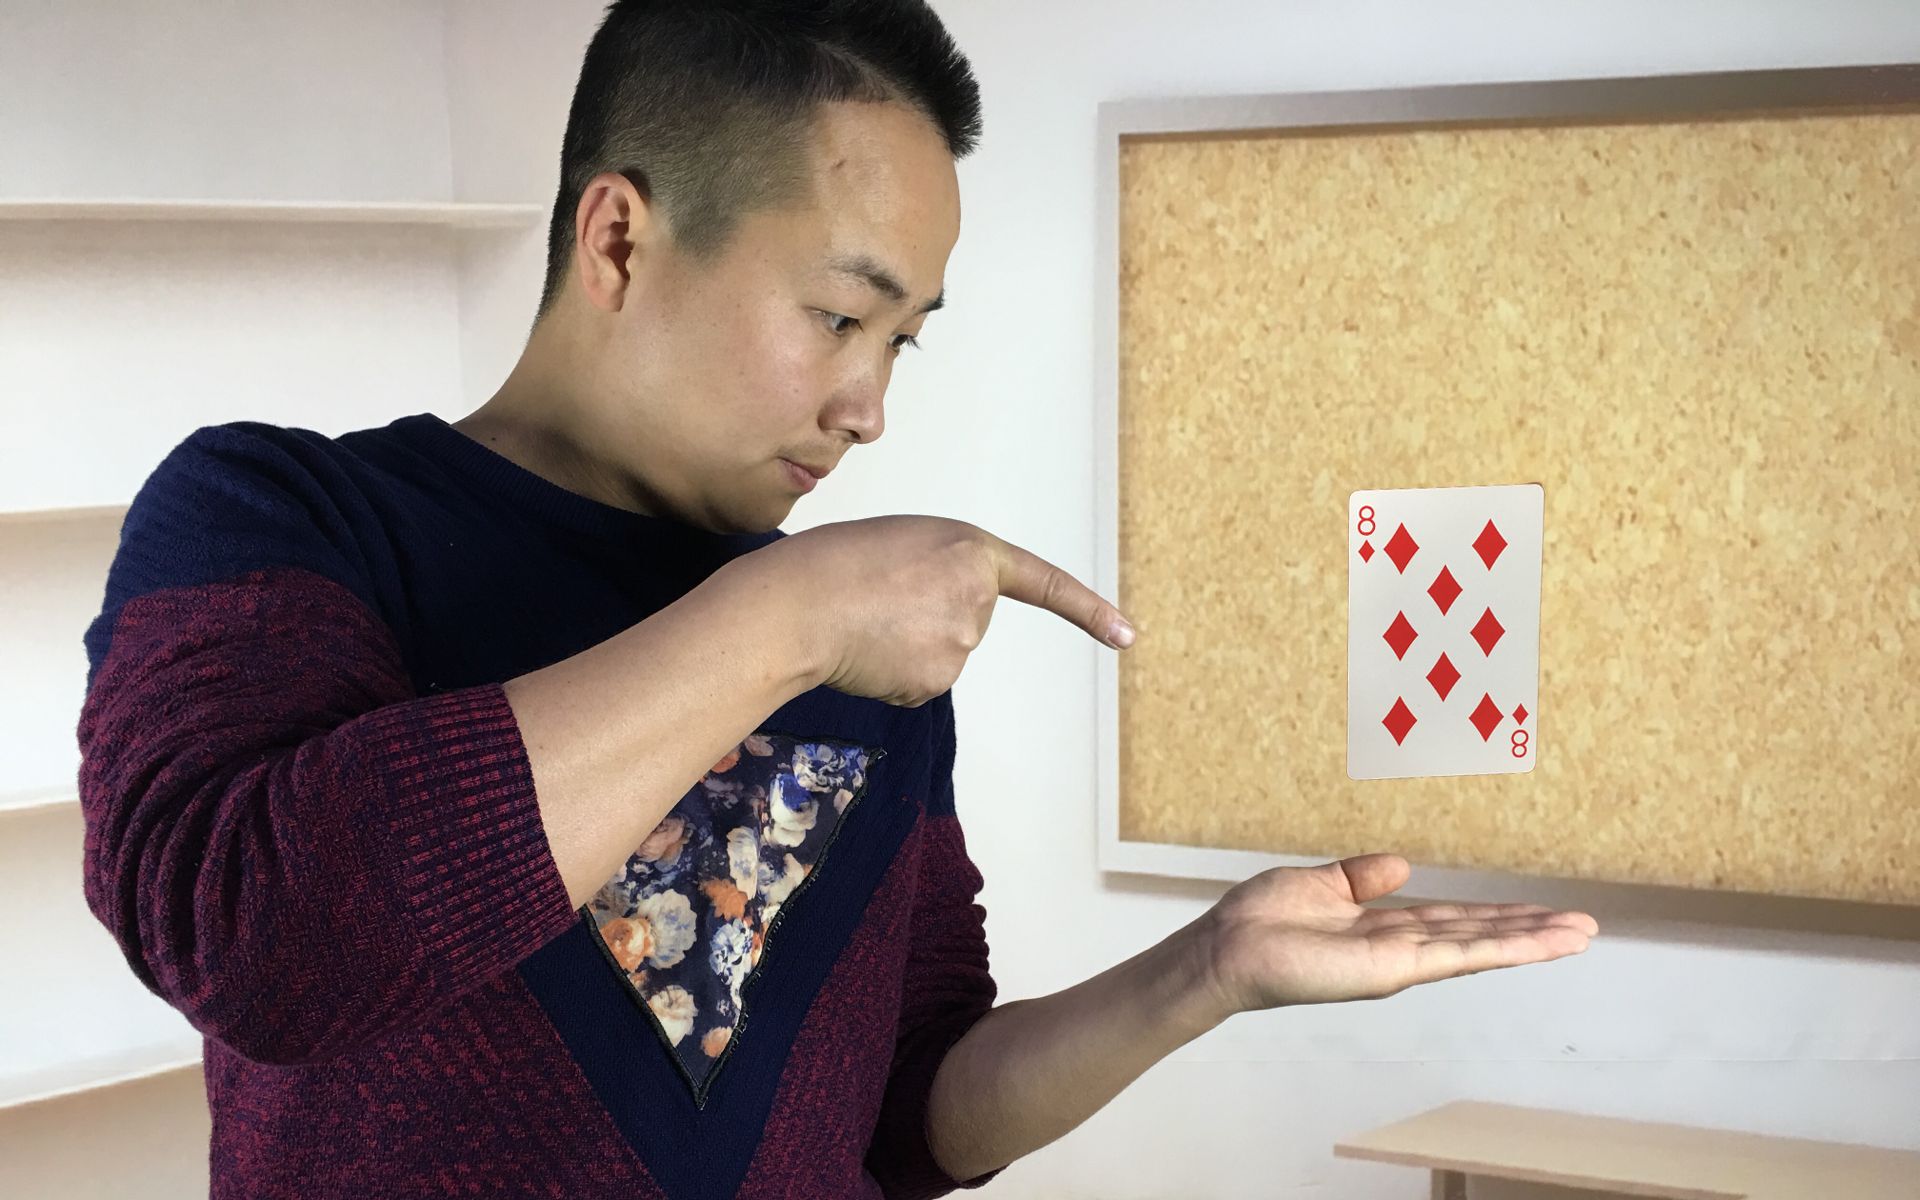 魔术揭秘:扑克牌在手上自动飞起来!揭秘后特简单